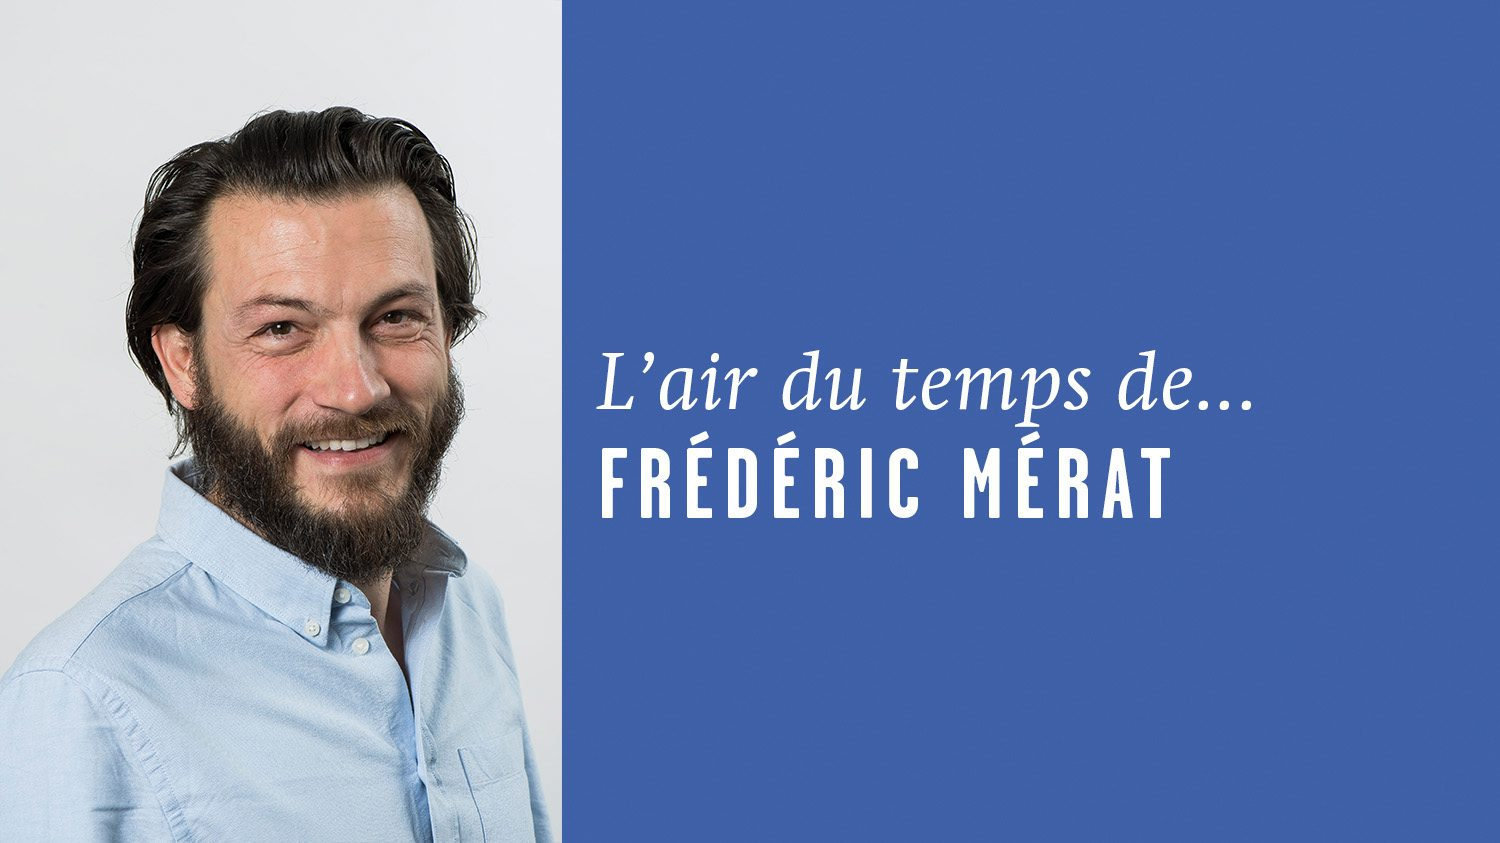 AirDutemps-FredericMerat (9)